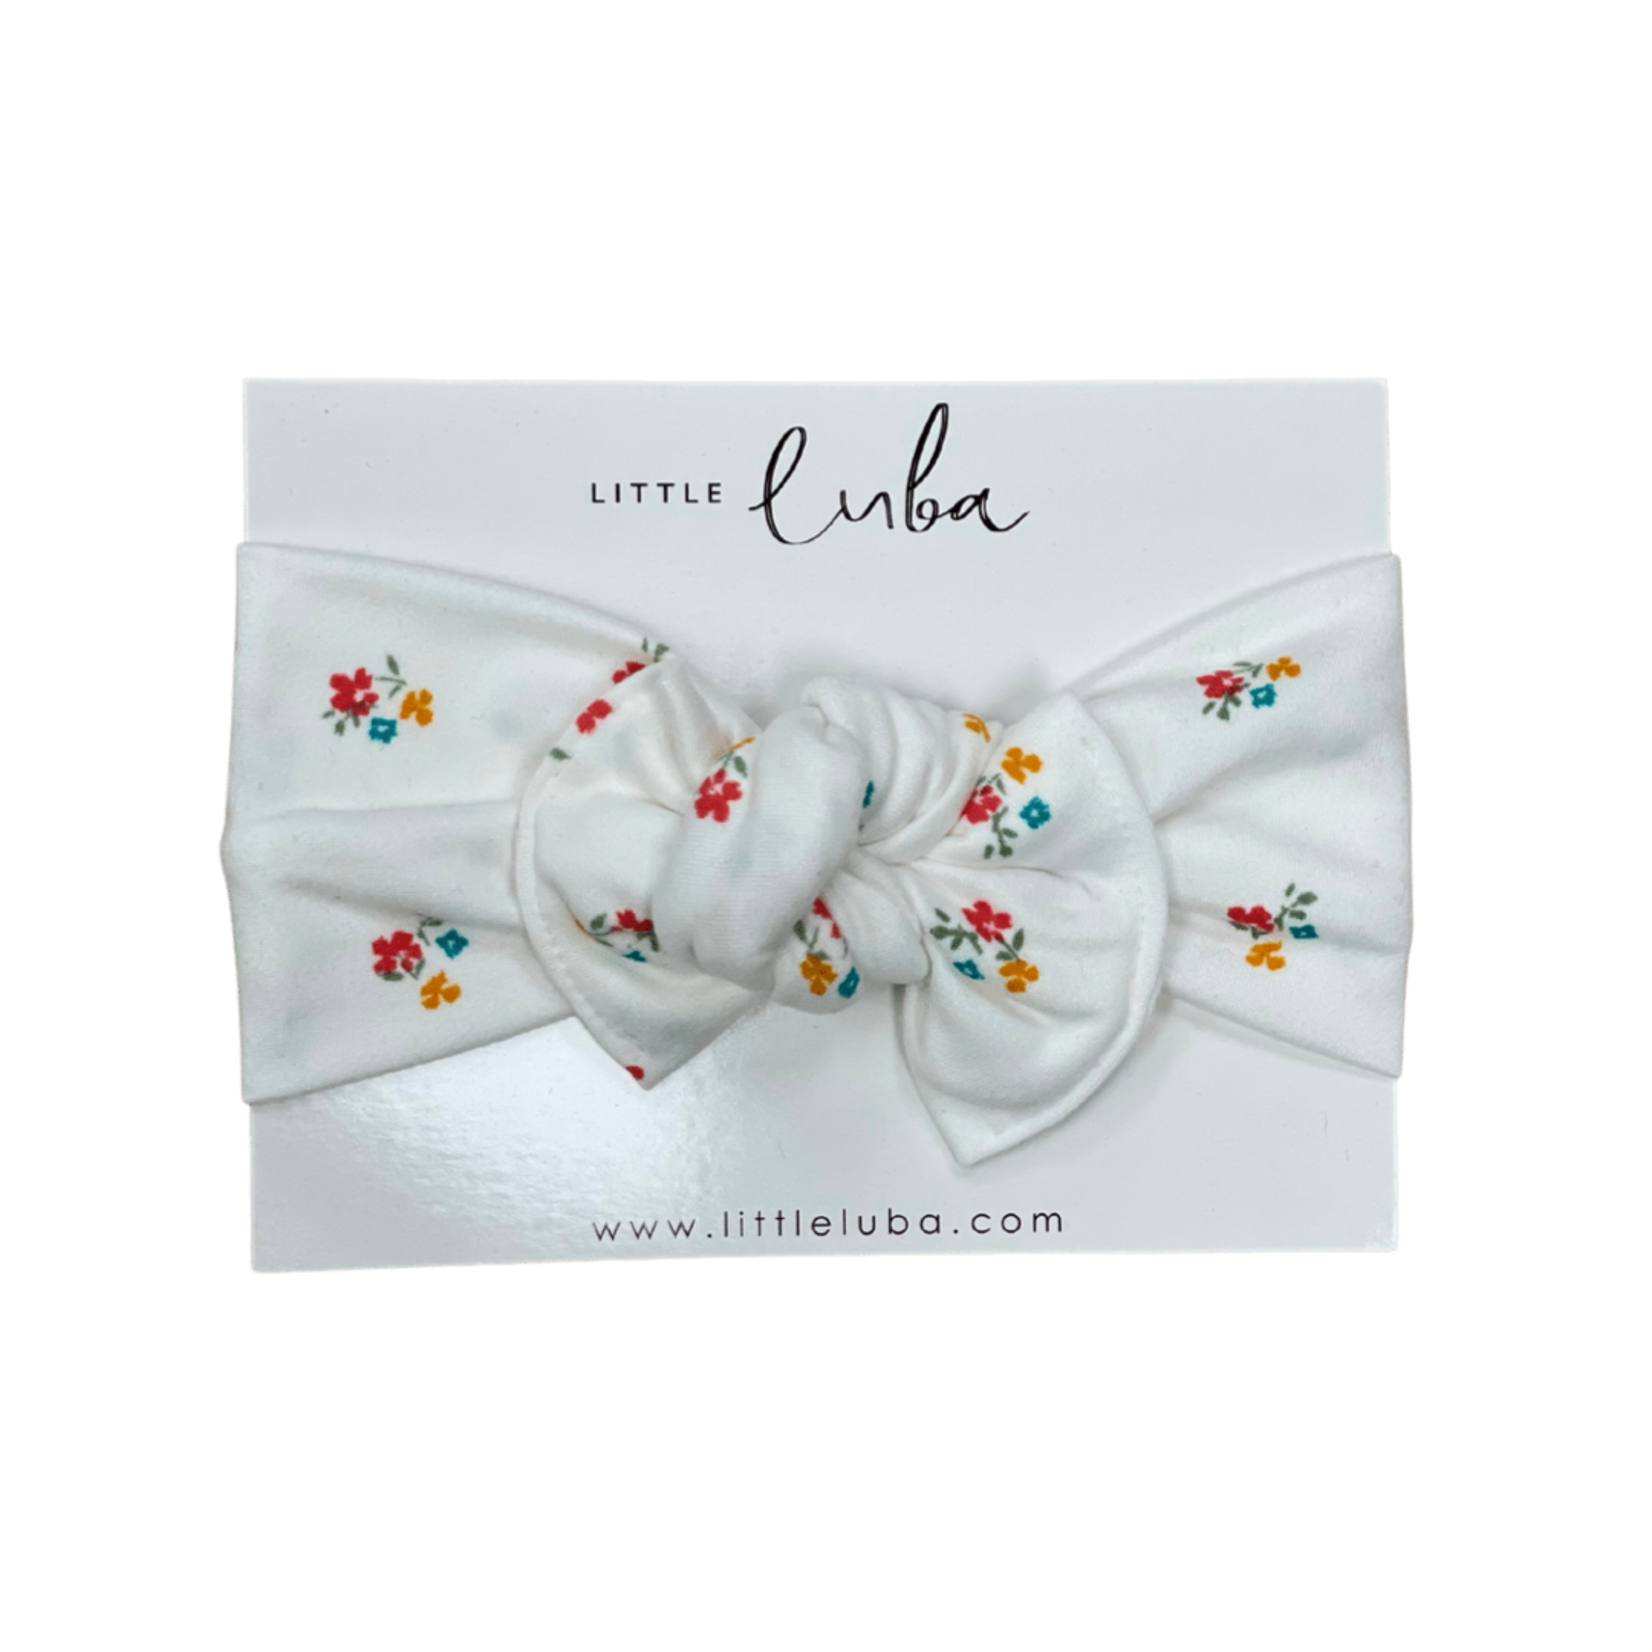 Little Luba Little Luba - Tie-On Headwraps